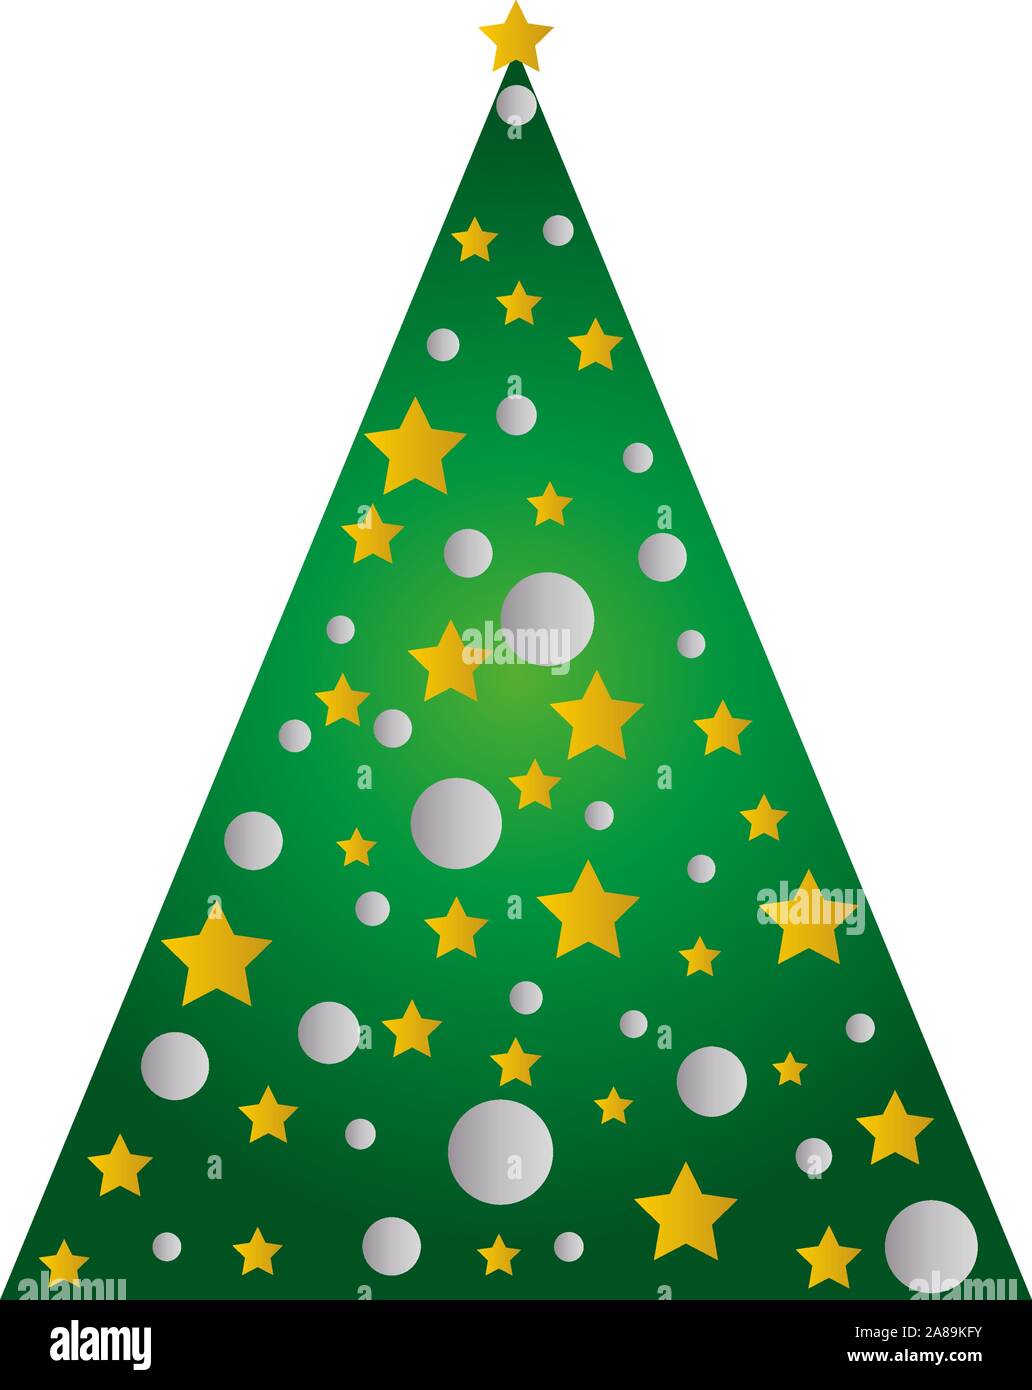 Icon Set mit grünen Fichten und geschmückten Weihnachtsbaum in einem Topf mit Stern, Deko Kugeln, frohe Weihnachten und einen guten Rutsch ins neue Jahr Grußkarte Stock Vektor